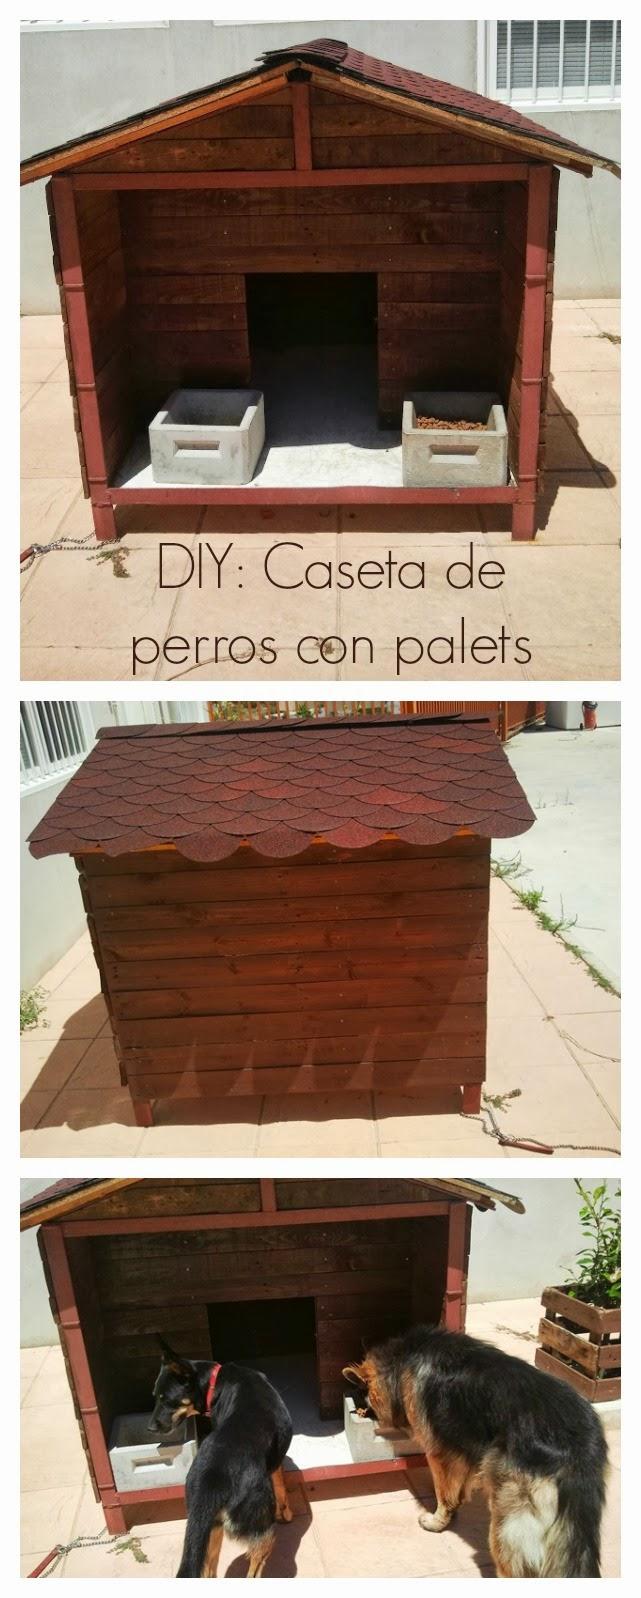 DIY: Cómo hacer una caseta de perros con palets